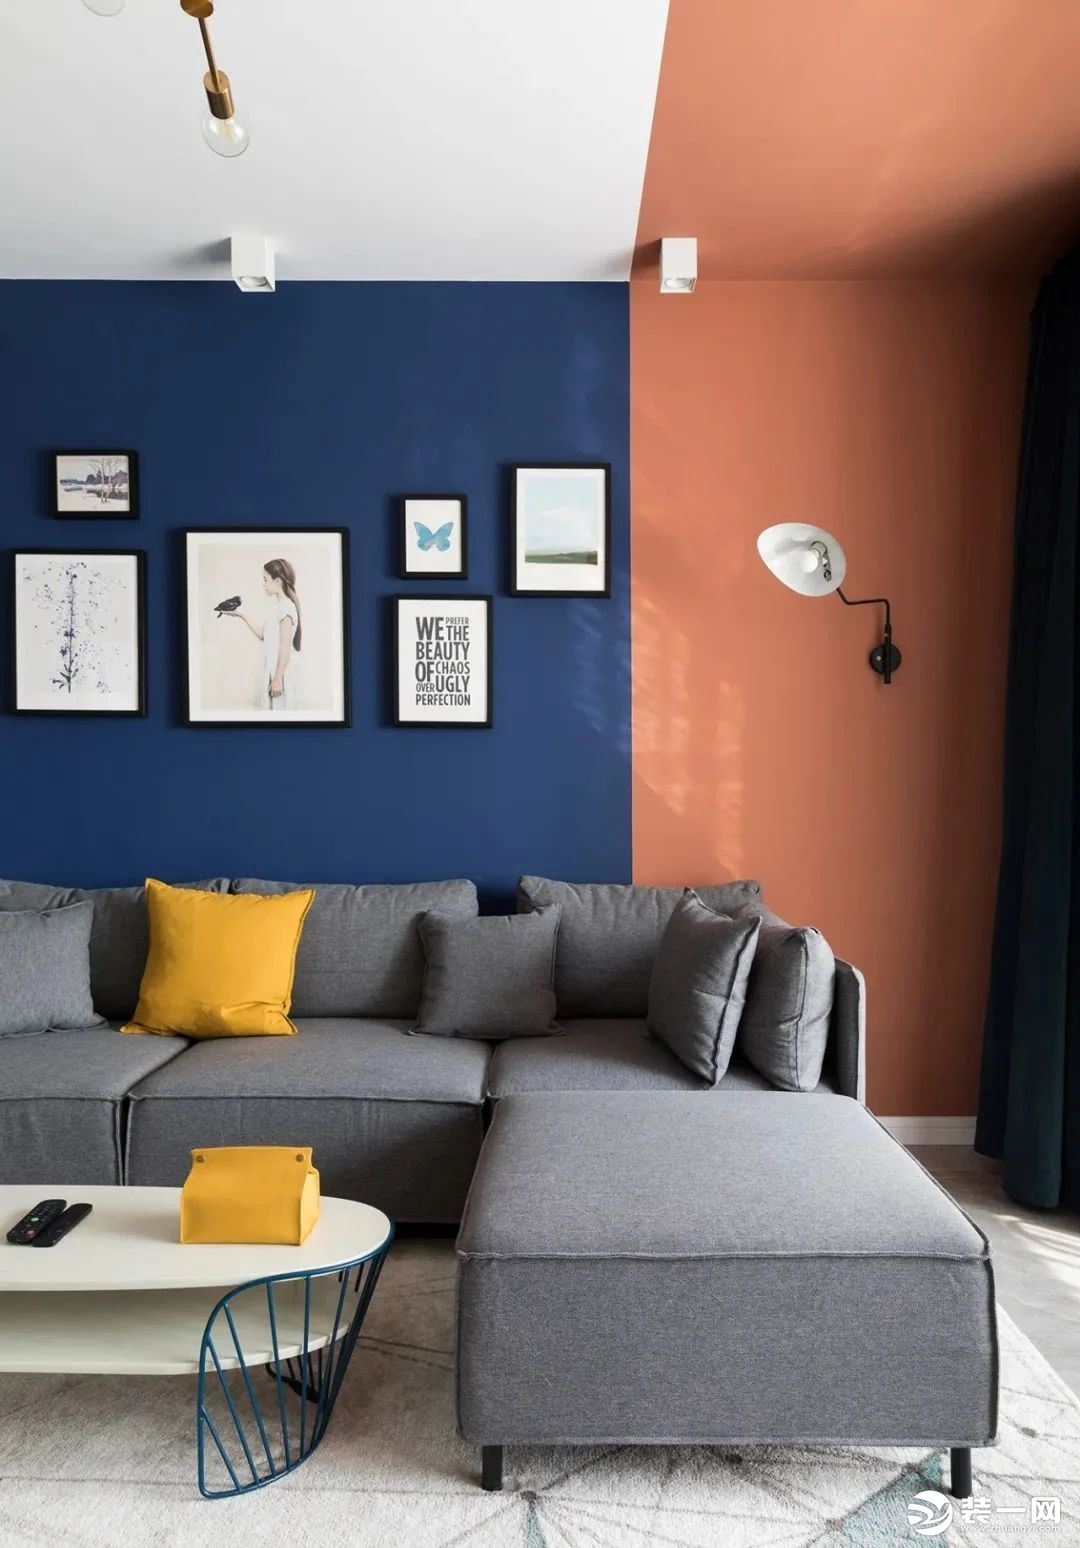 灰色沙发搭配弧形茶几 一抹黄色提亮视觉 背景用简框画与壁灯修饰